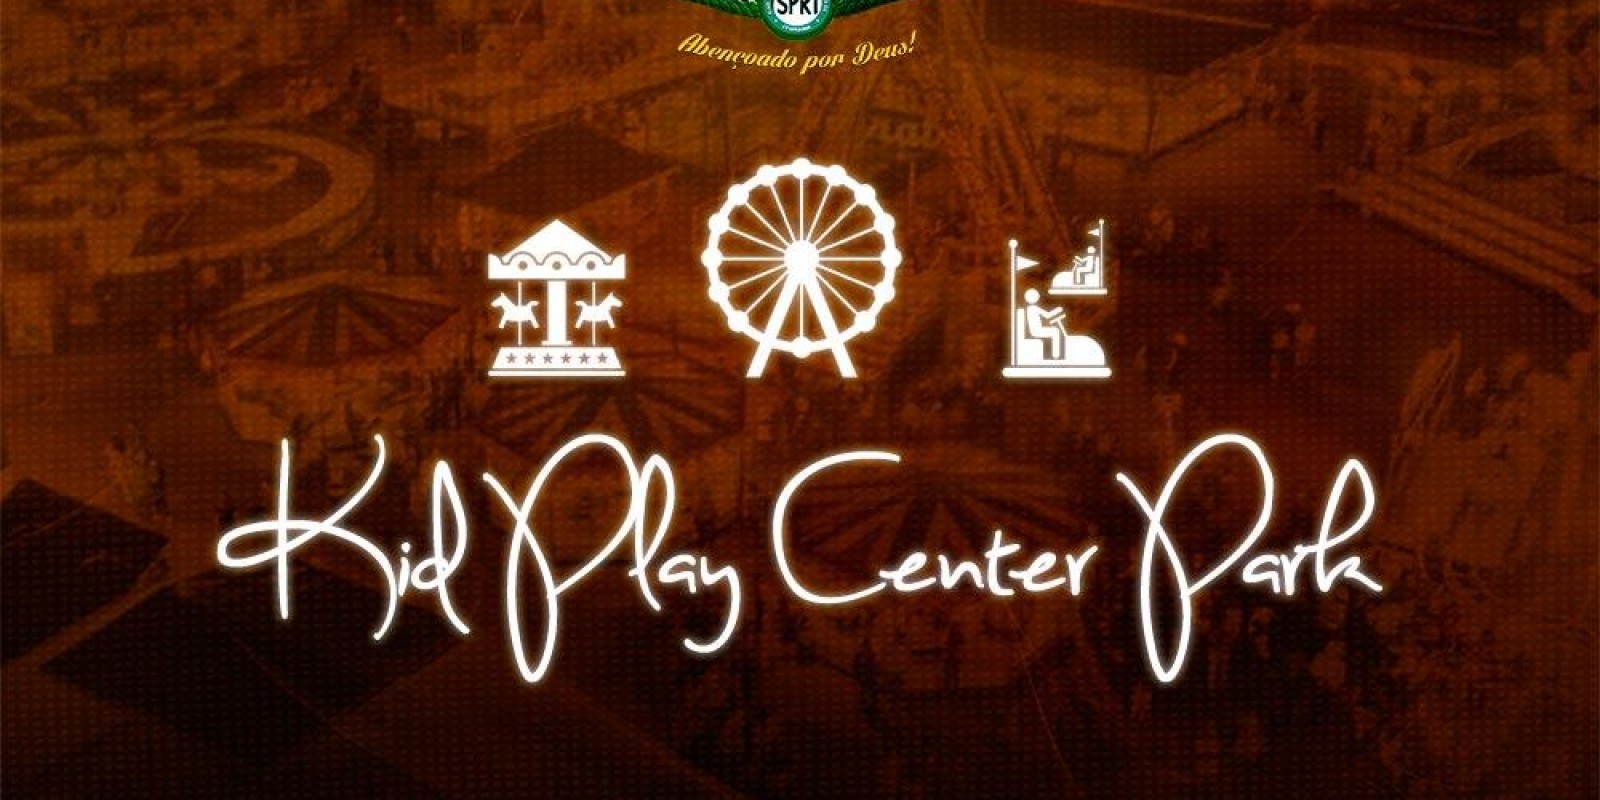 EXPORAMA - Parque de diversões Kid Play Center Park já está garantido na 42ª Exporama